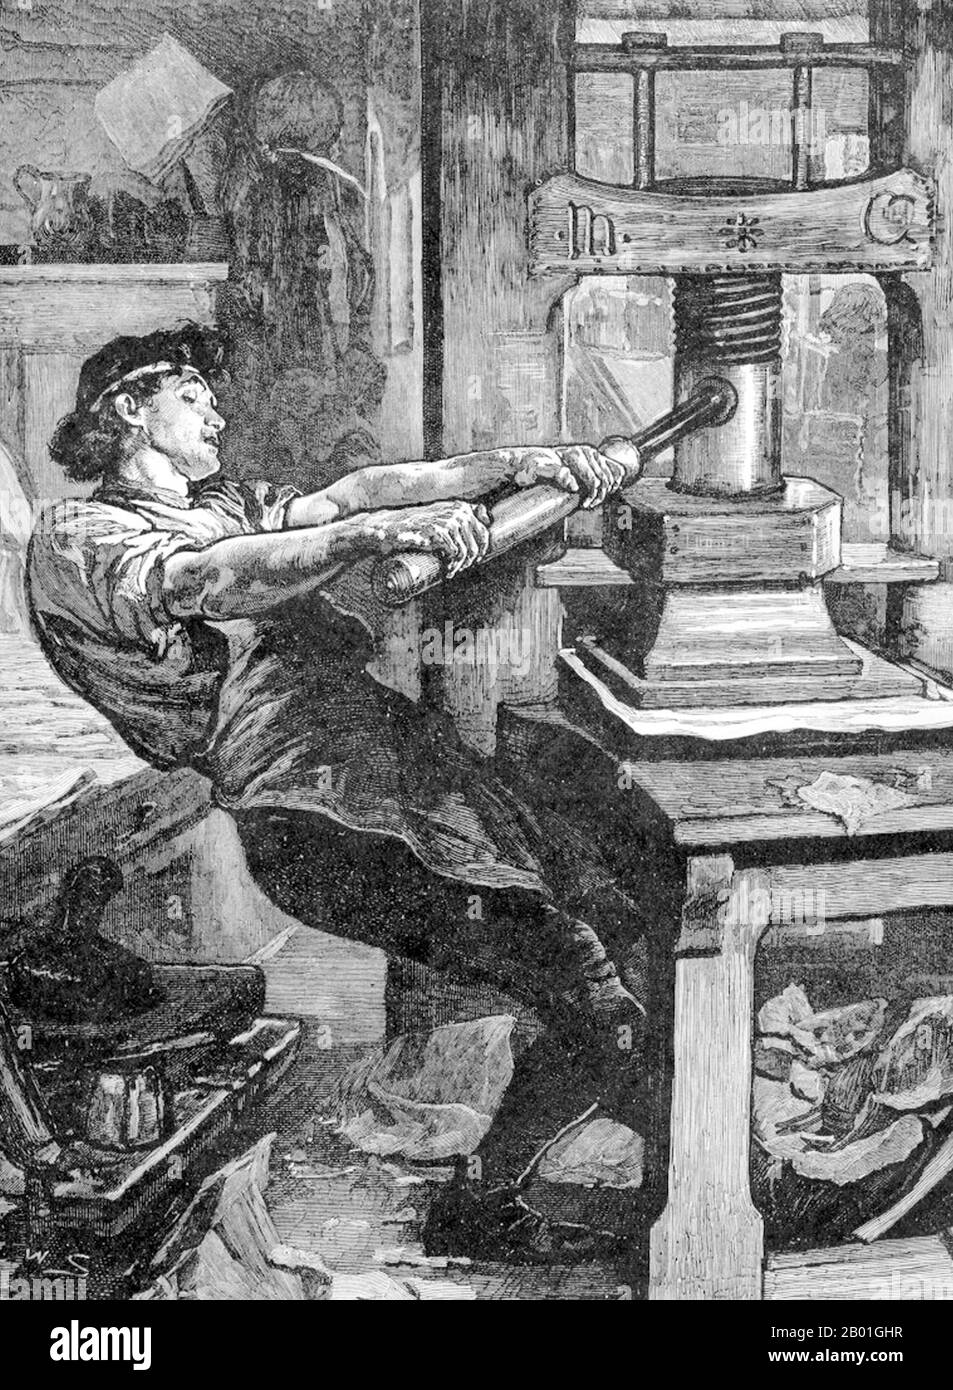 Deutschland: Eine mechanische Druckerpresse vom Typ Johannes Gutenberg, Repräsentation des 19. Jahrhunderts. Johannes Gensfleisch zur Laden zum Gutenberg war ein Schmied, Goldschmied, Drucker und Verleger, der die Druckerpresse vorstellte. Seine Verwendung des beweglichen Drucks begann die Druckrevolution und gilt weithin als das wichtigste Ereignis der Neuzeit. Sie spielte eine Schlüsselrolle bei der Entwicklung der Renaissance, der Reformierung und der wissenschaftlichen Revolution und legte die Grundlage für die moderne wissensbasierte Wirtschaft und die Verbreitung des Lernens in der Masse. Stockfoto